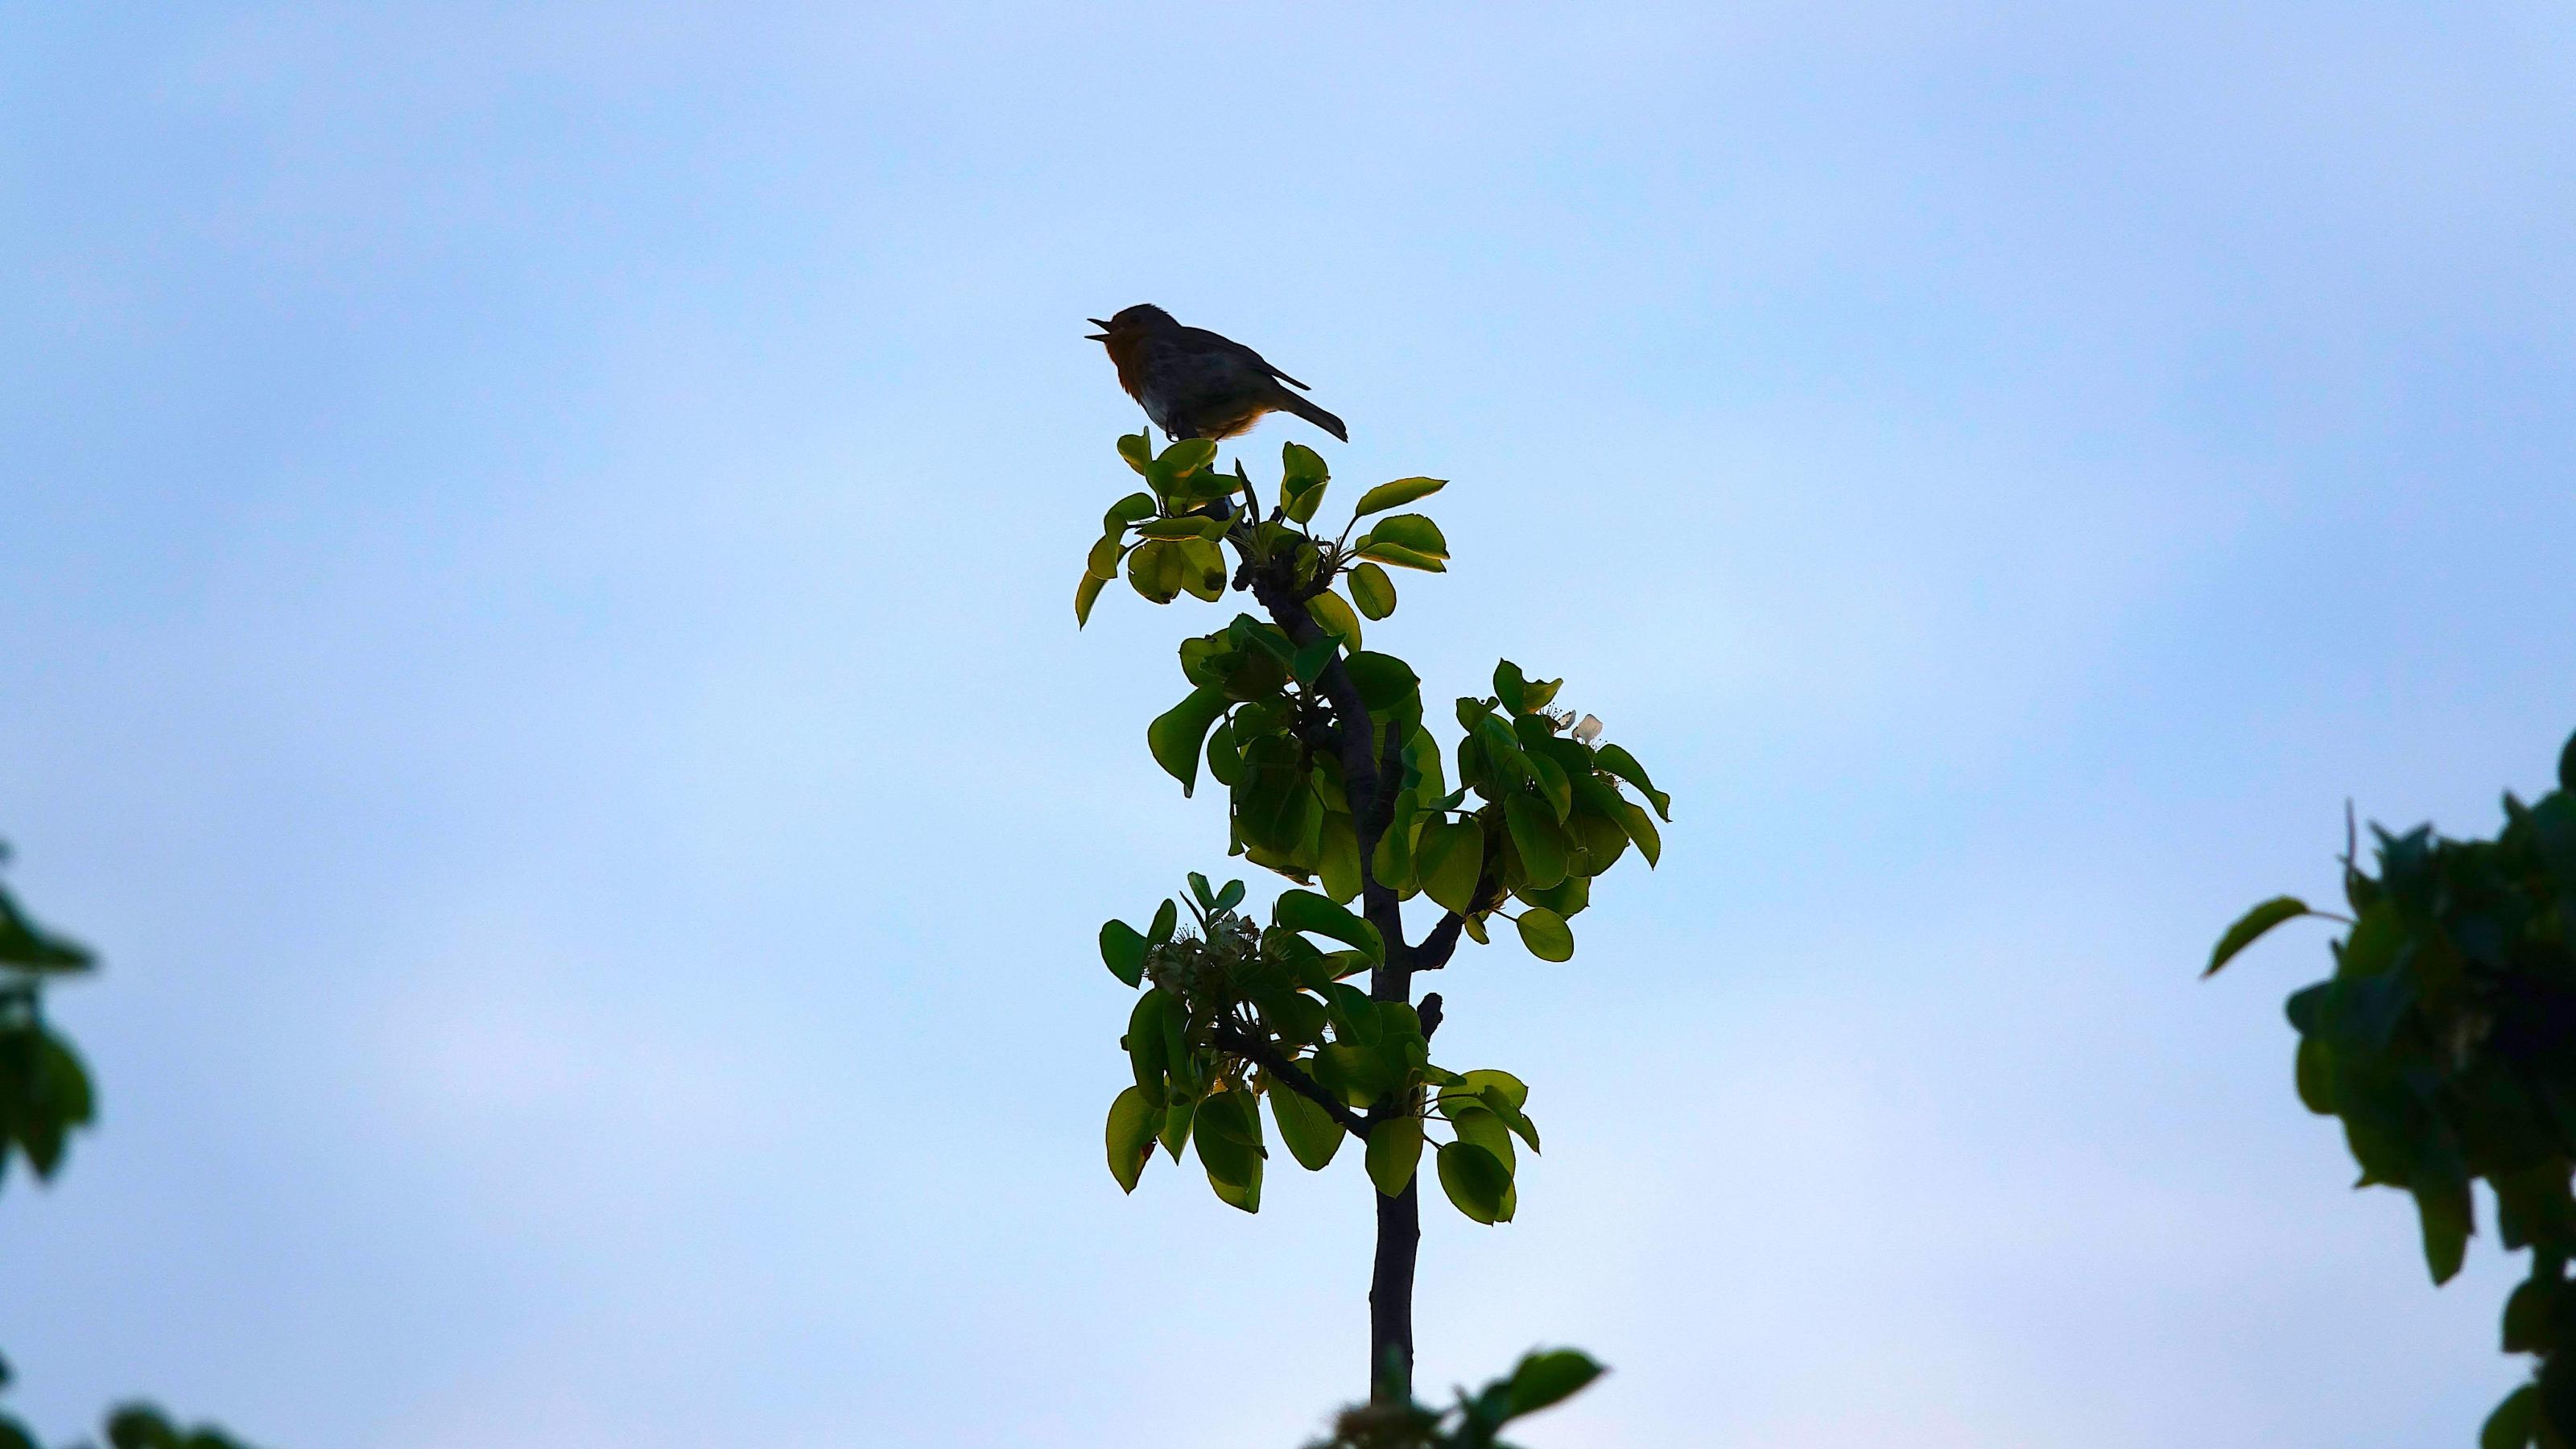 Ein kleiner Vogel sitzt auf der Spitze eines jungen Baumes.